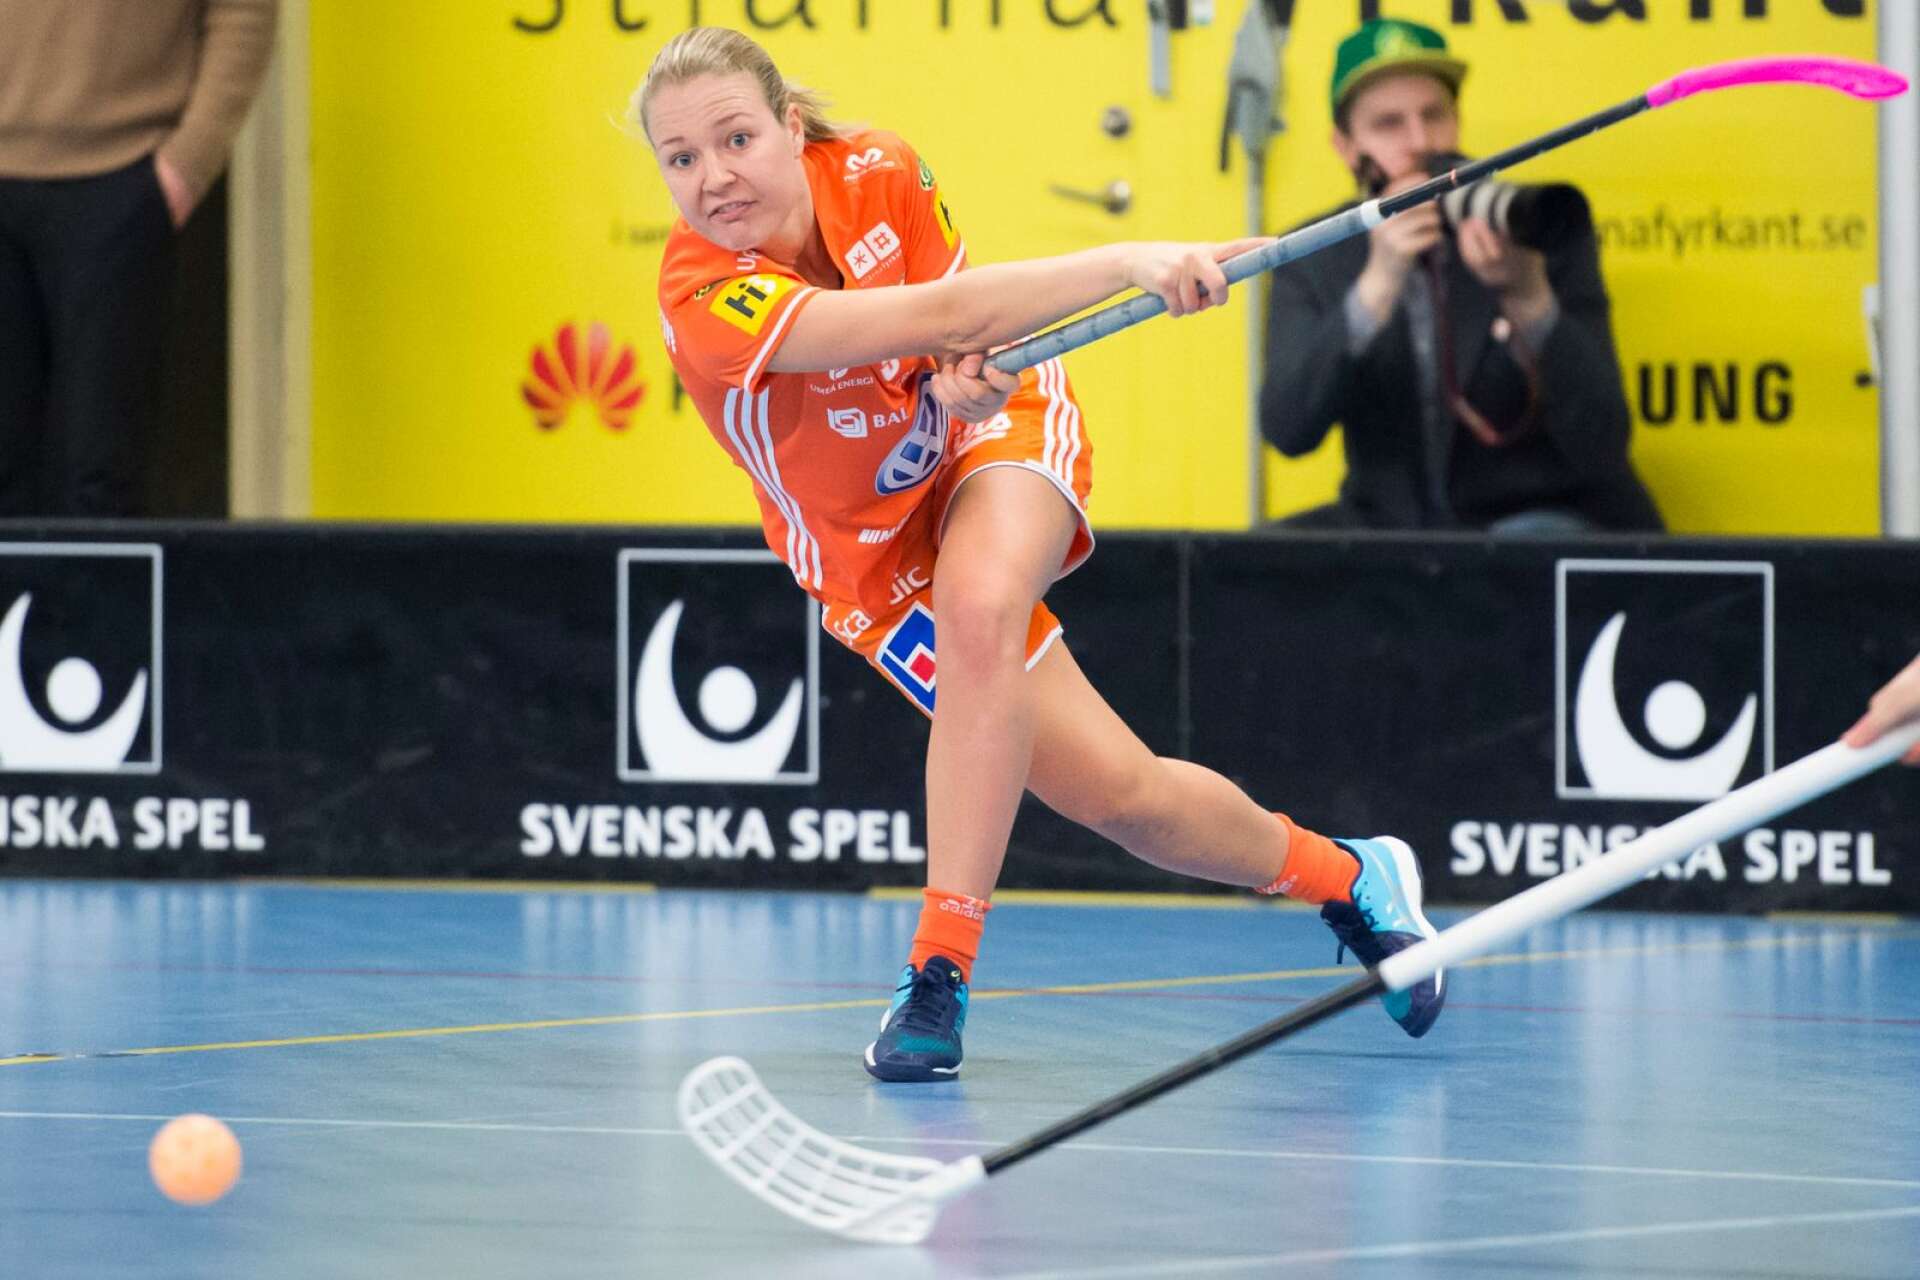 Amanda Delgado Johanssons flytt från Thorengruppen till Sirius beskrivs som en av SSL:s största övergångar. 25-åringen ansluter till Uppsalaklubben med fyra SM-guld och två VM-guld på sitt cv.